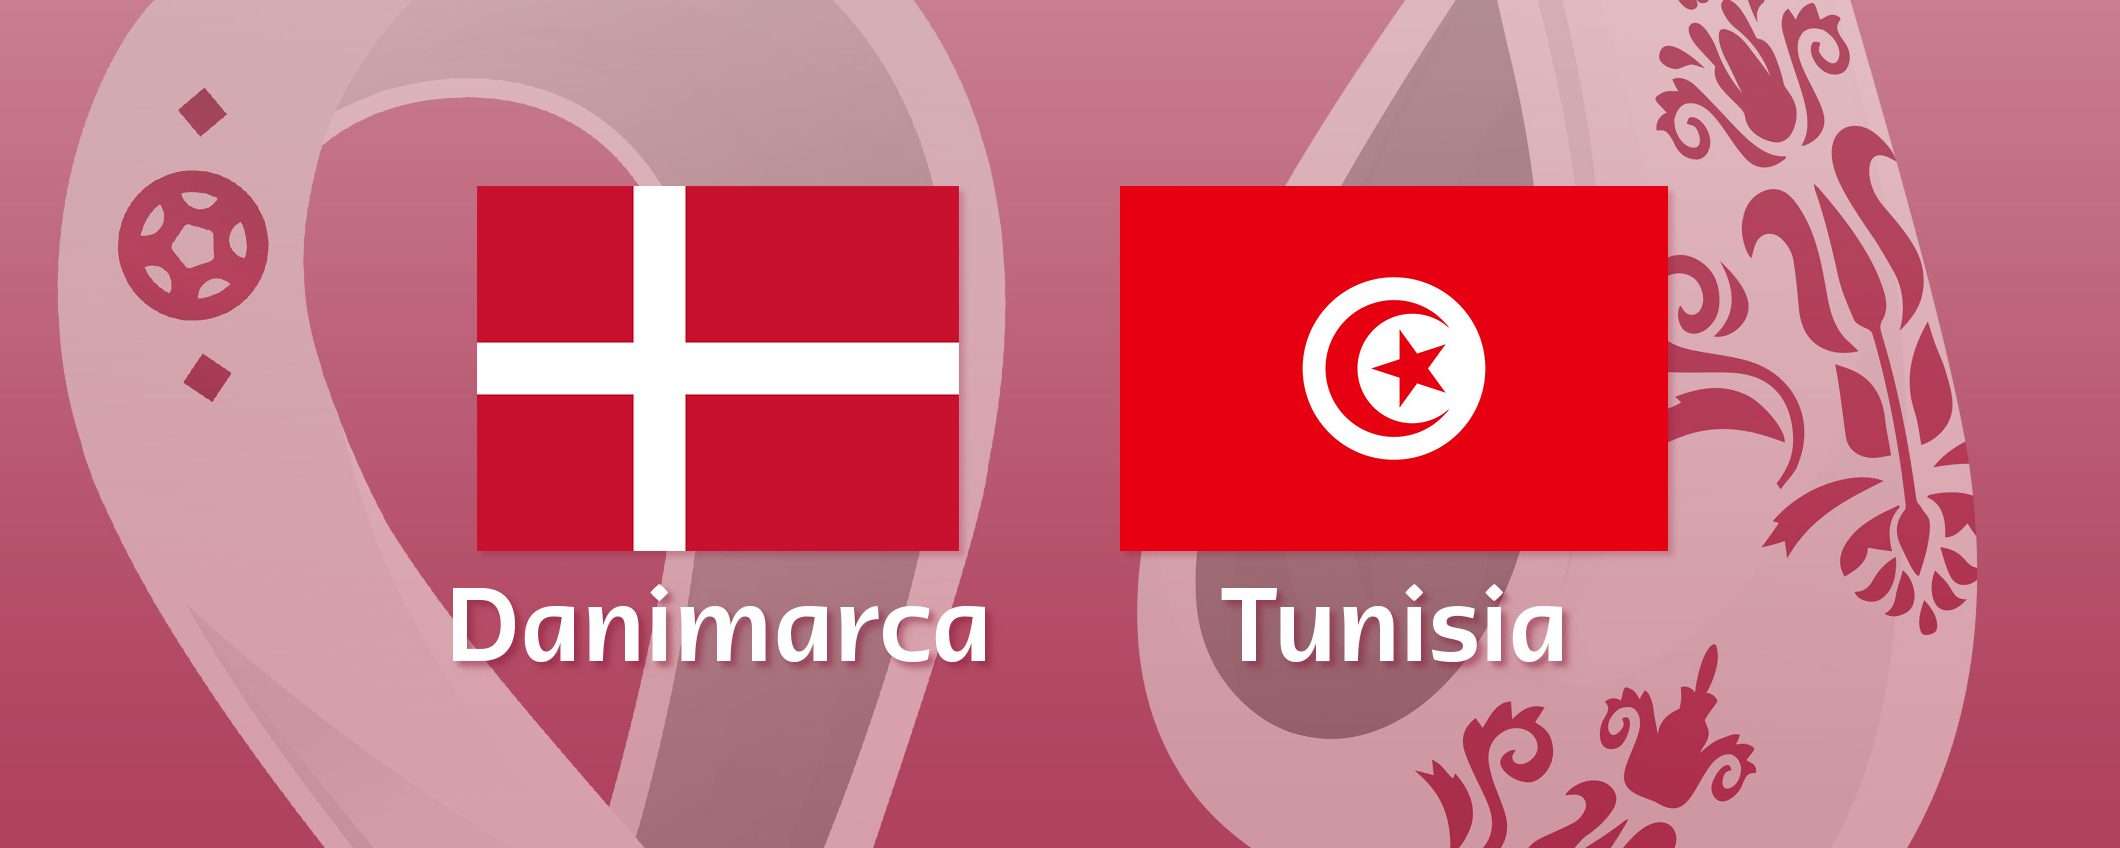 Come vedere Danimarca-Tunisia in streaming (Mondiali)